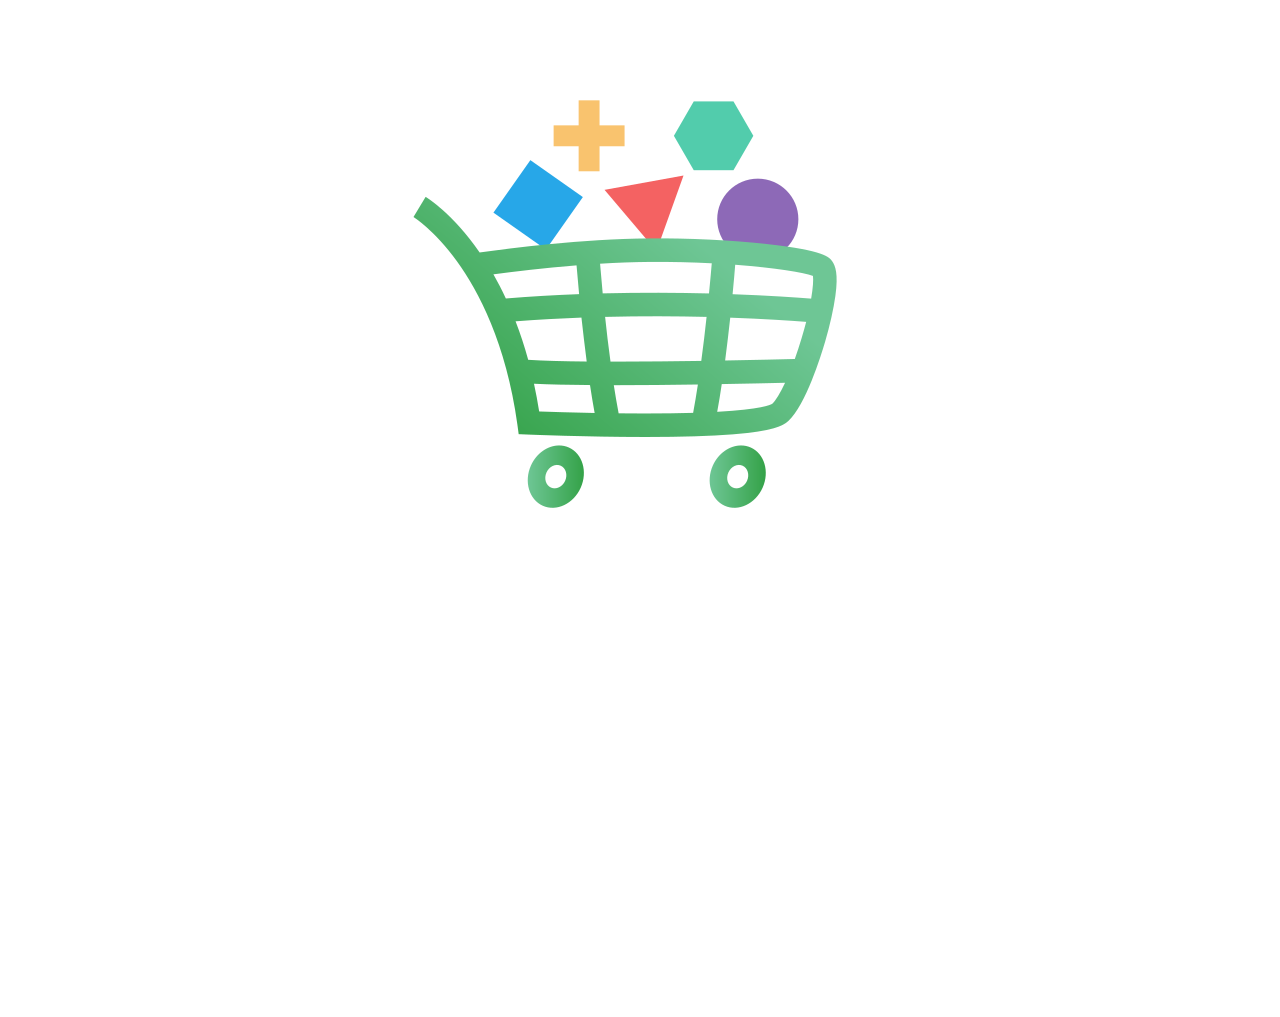 squick shop's web page